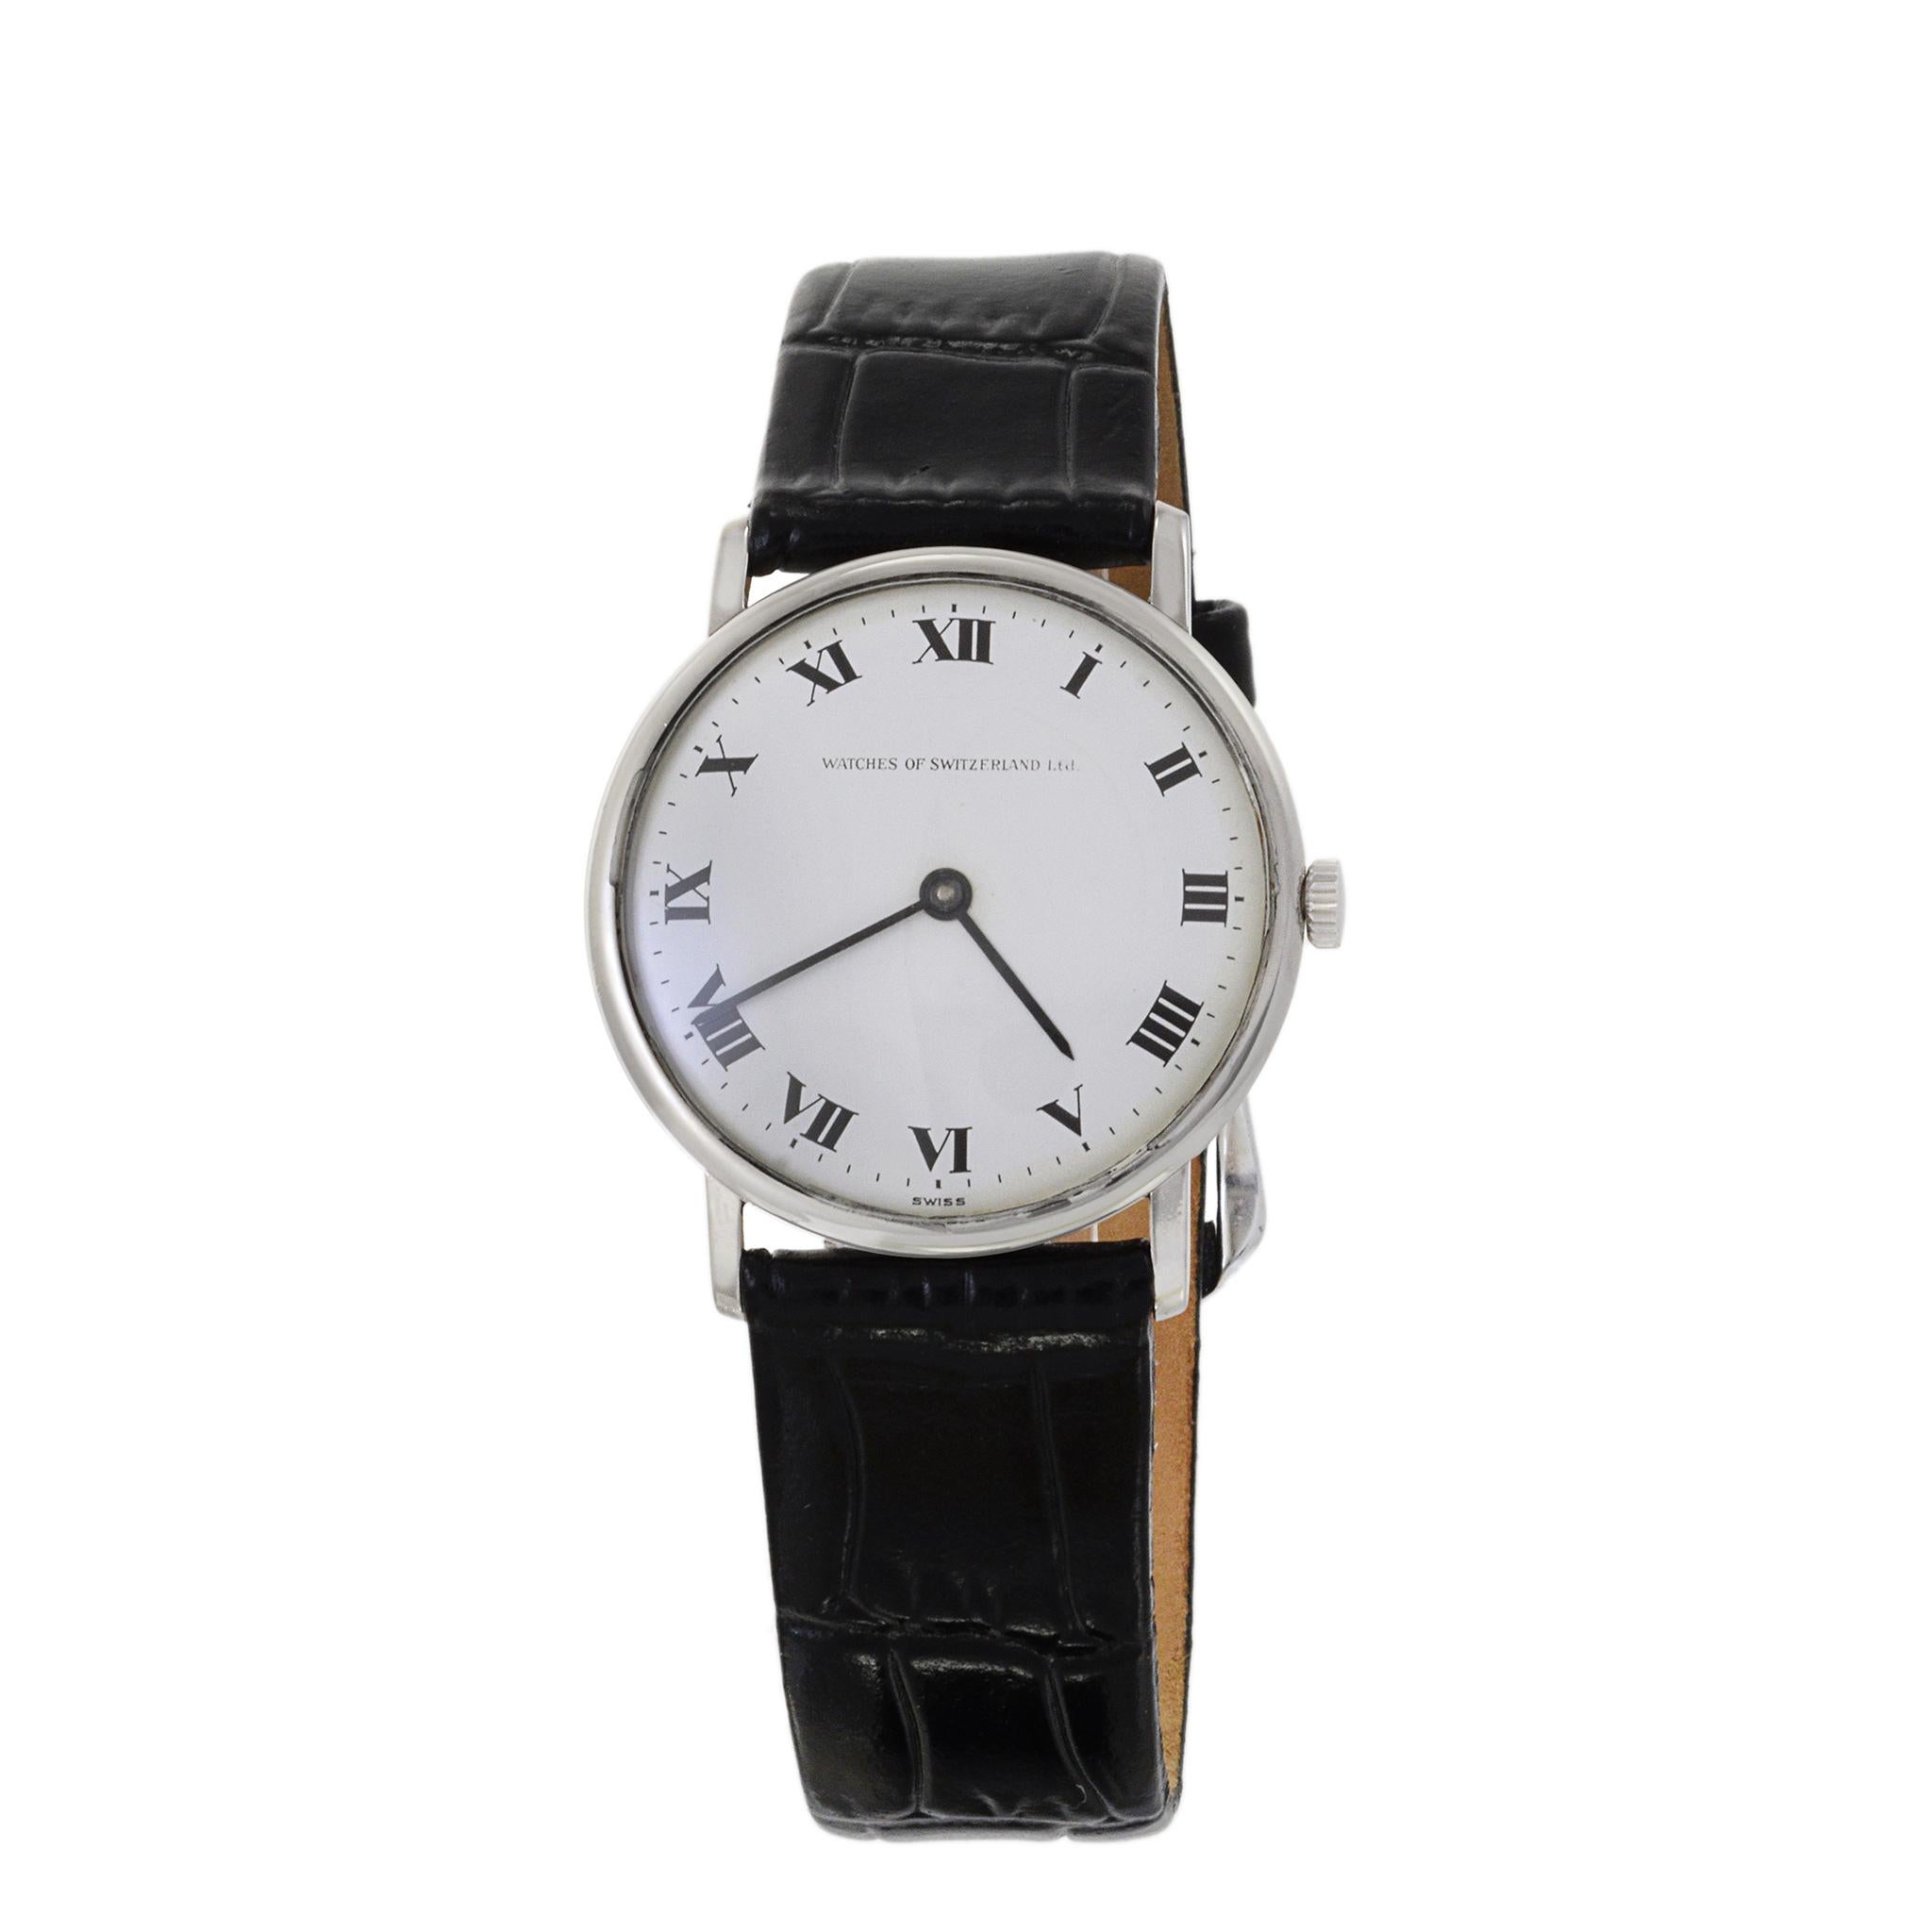 Il s'agit d'une Ebel Calatrava ultra rare fabriquée pour Watches of Switzerland dans les années 1970. Cette montre présente un superbe cadran blanc à chiffres romains. C'est un vrai classique !
Cette montre est animée par un mouvement à remontage